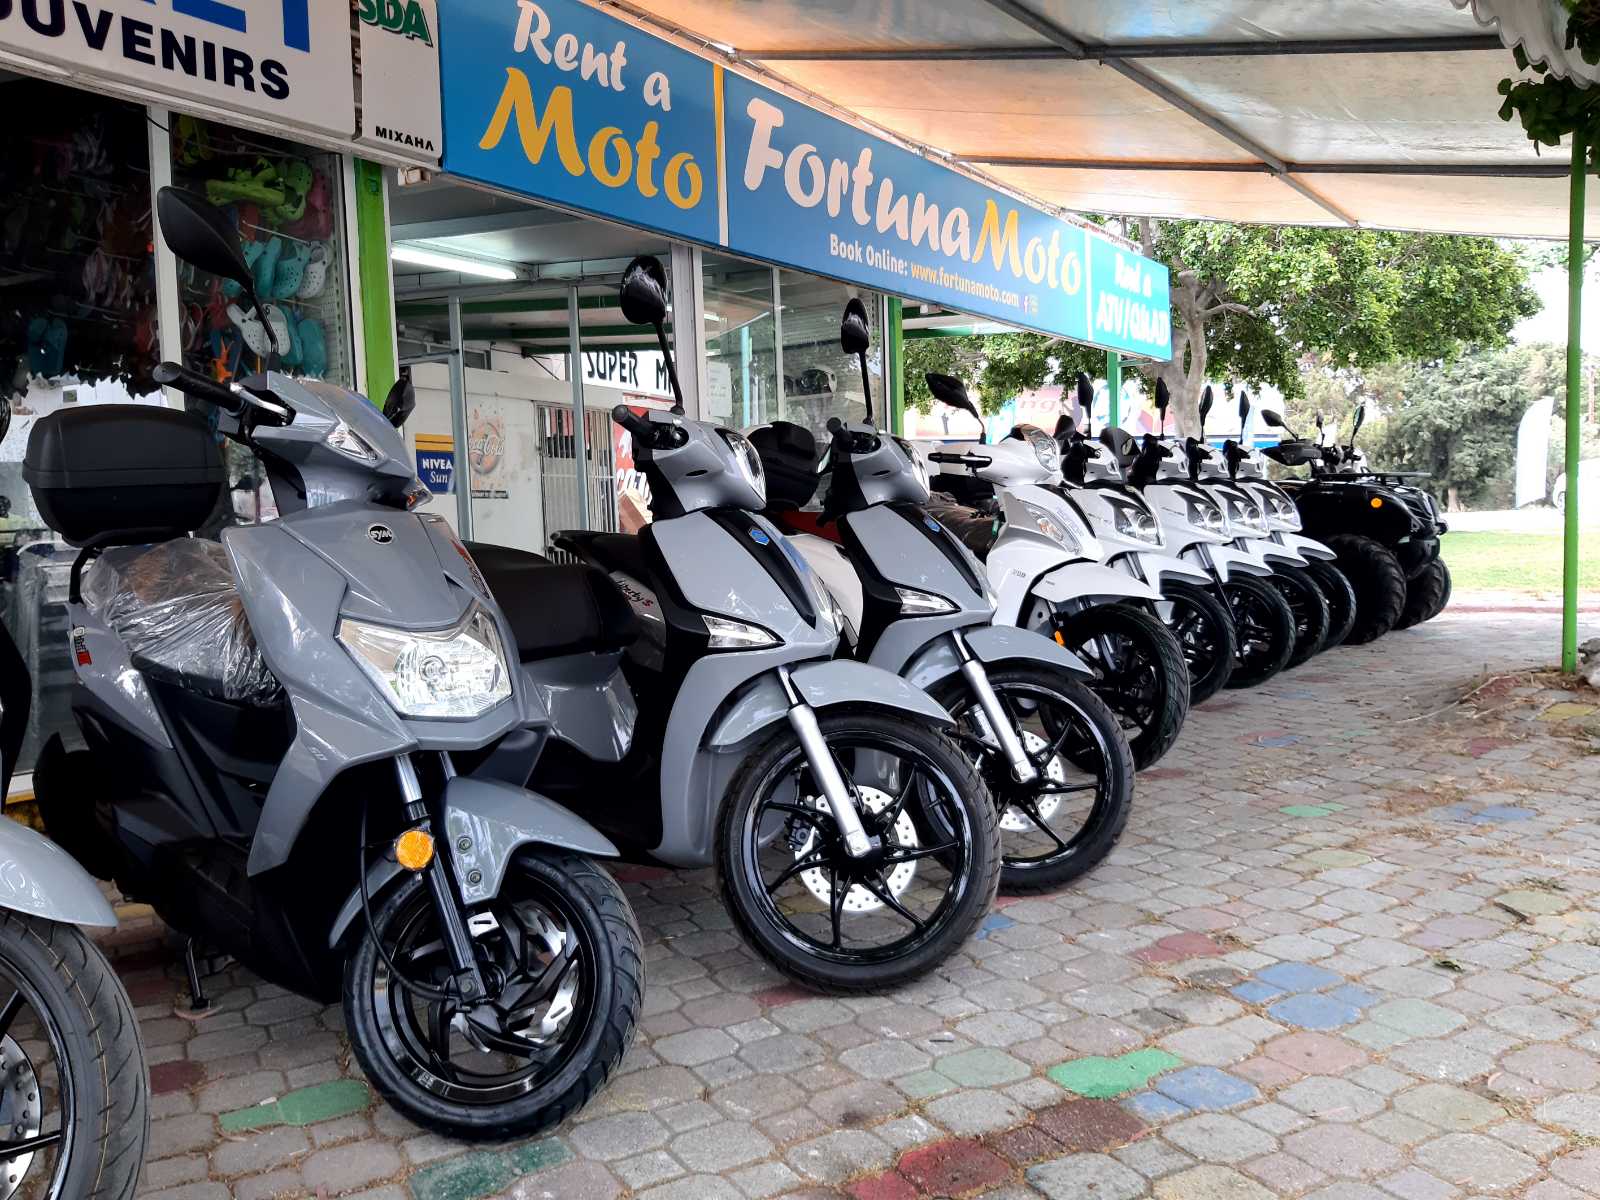 Fortuna moto Faliraki rhodes rent a motorbike quad